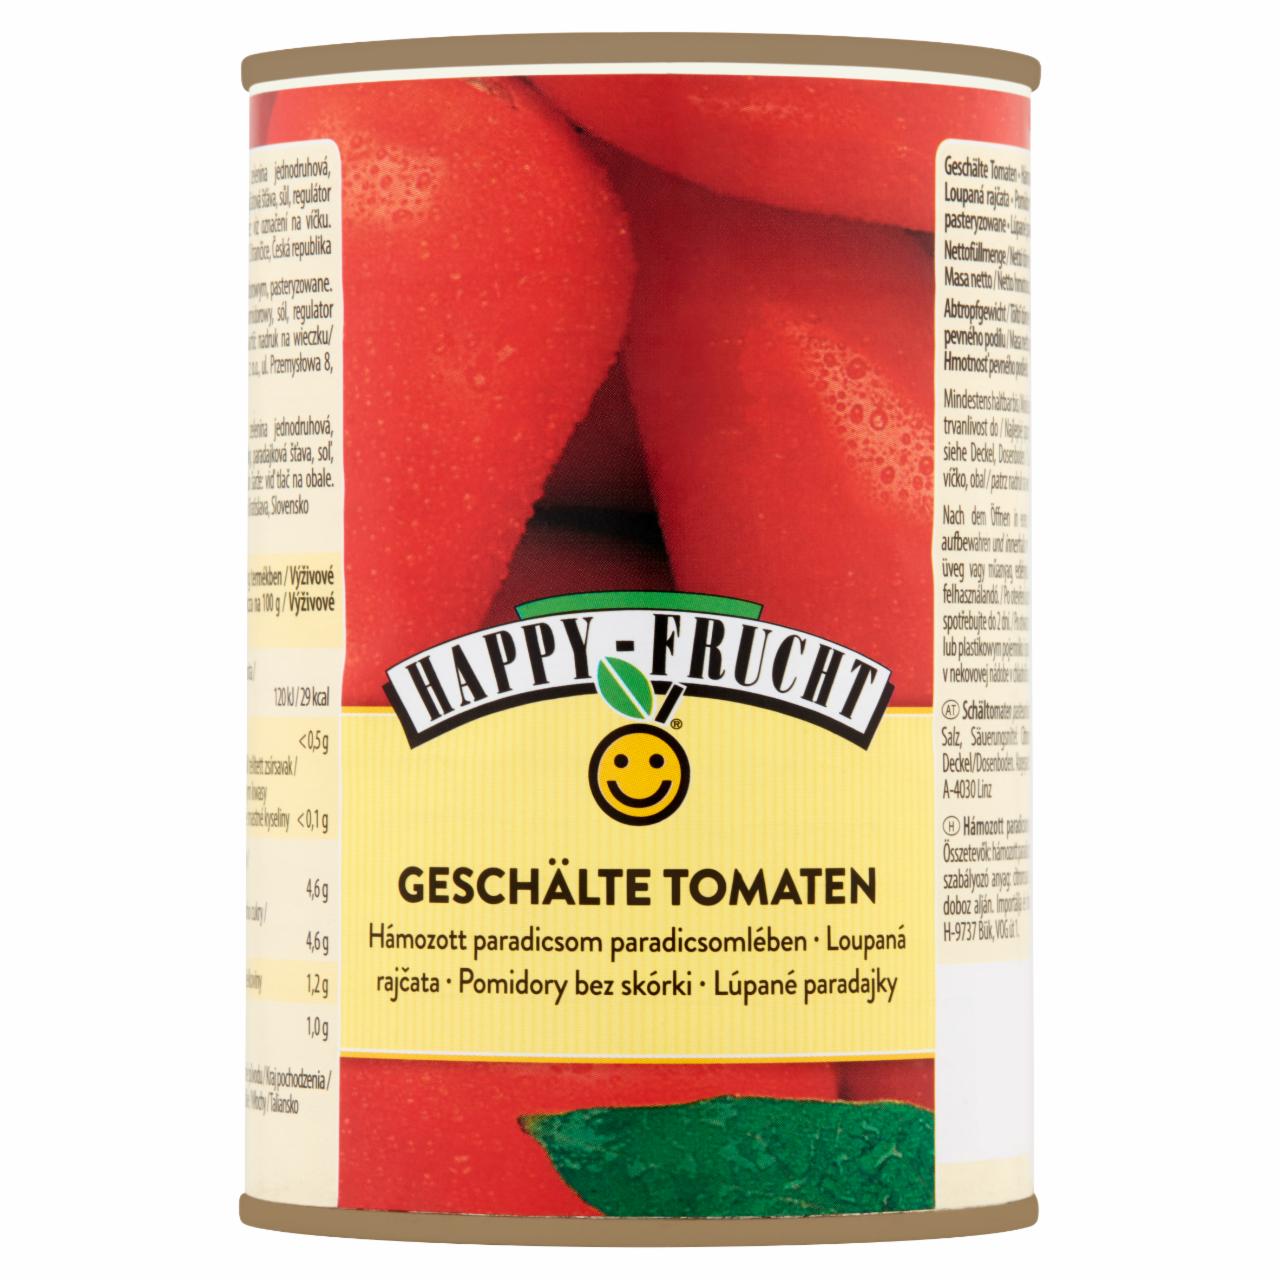 Zdjęcia - HAPPY FRUCHT Pomidory bez skórki 400 g